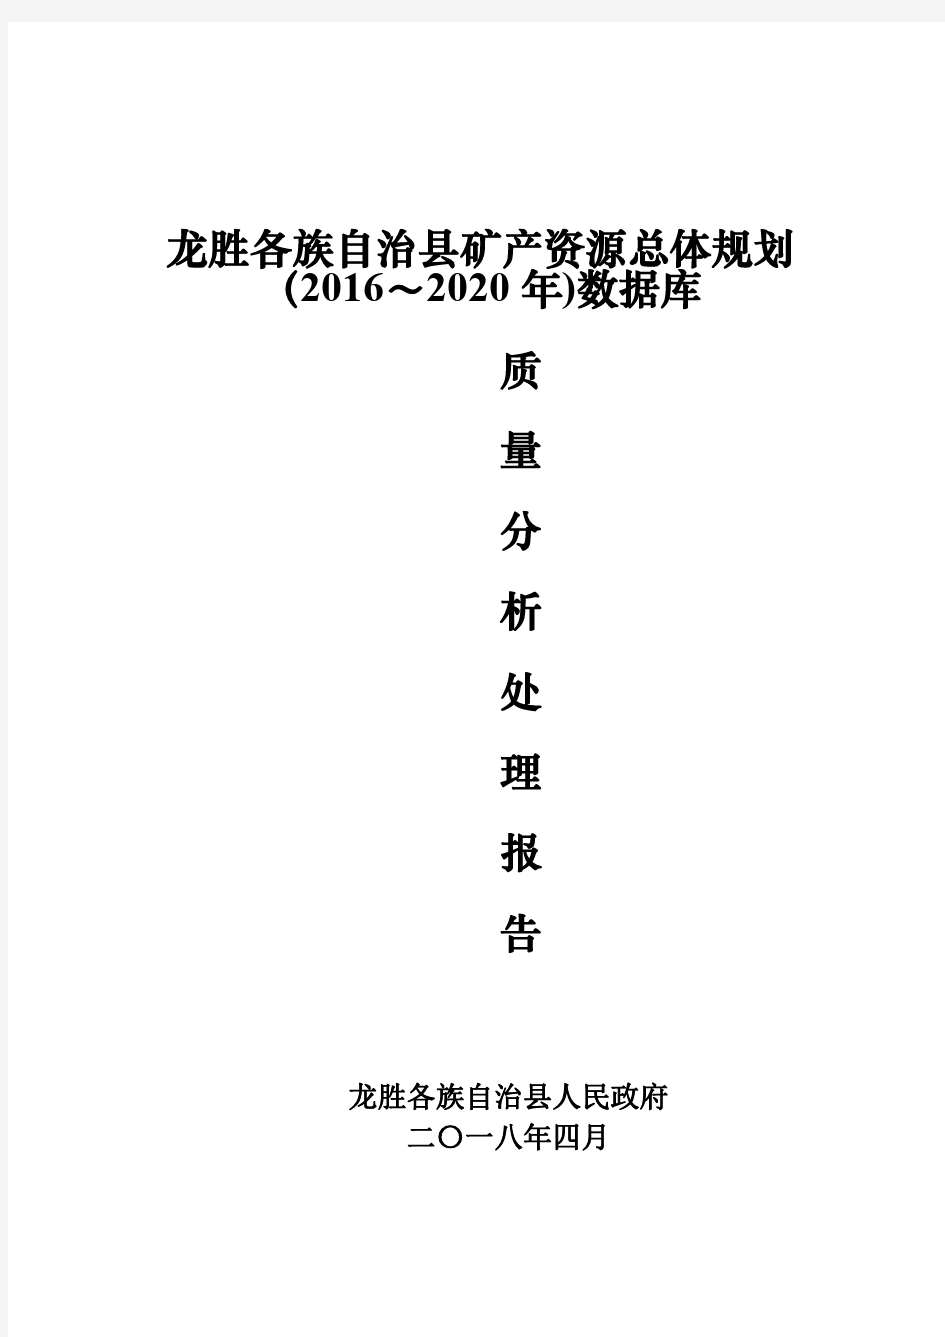 龙胜各族自治县矿产资源总体规划(2016~2020年)数据库